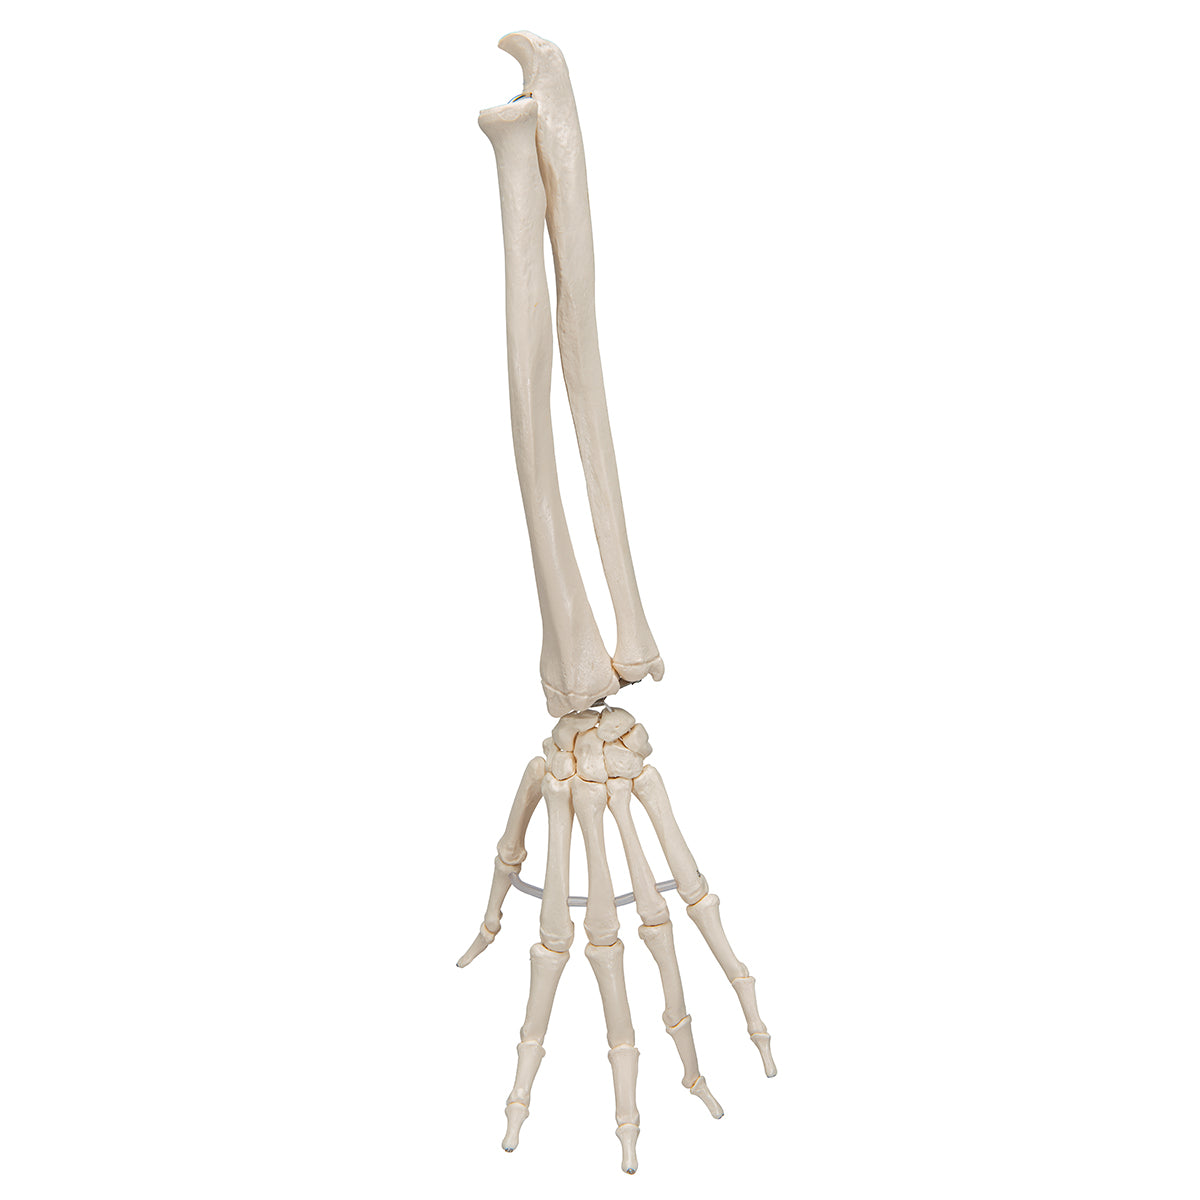 Modell av handens skelett monterat på resår och båda underarmsbenen